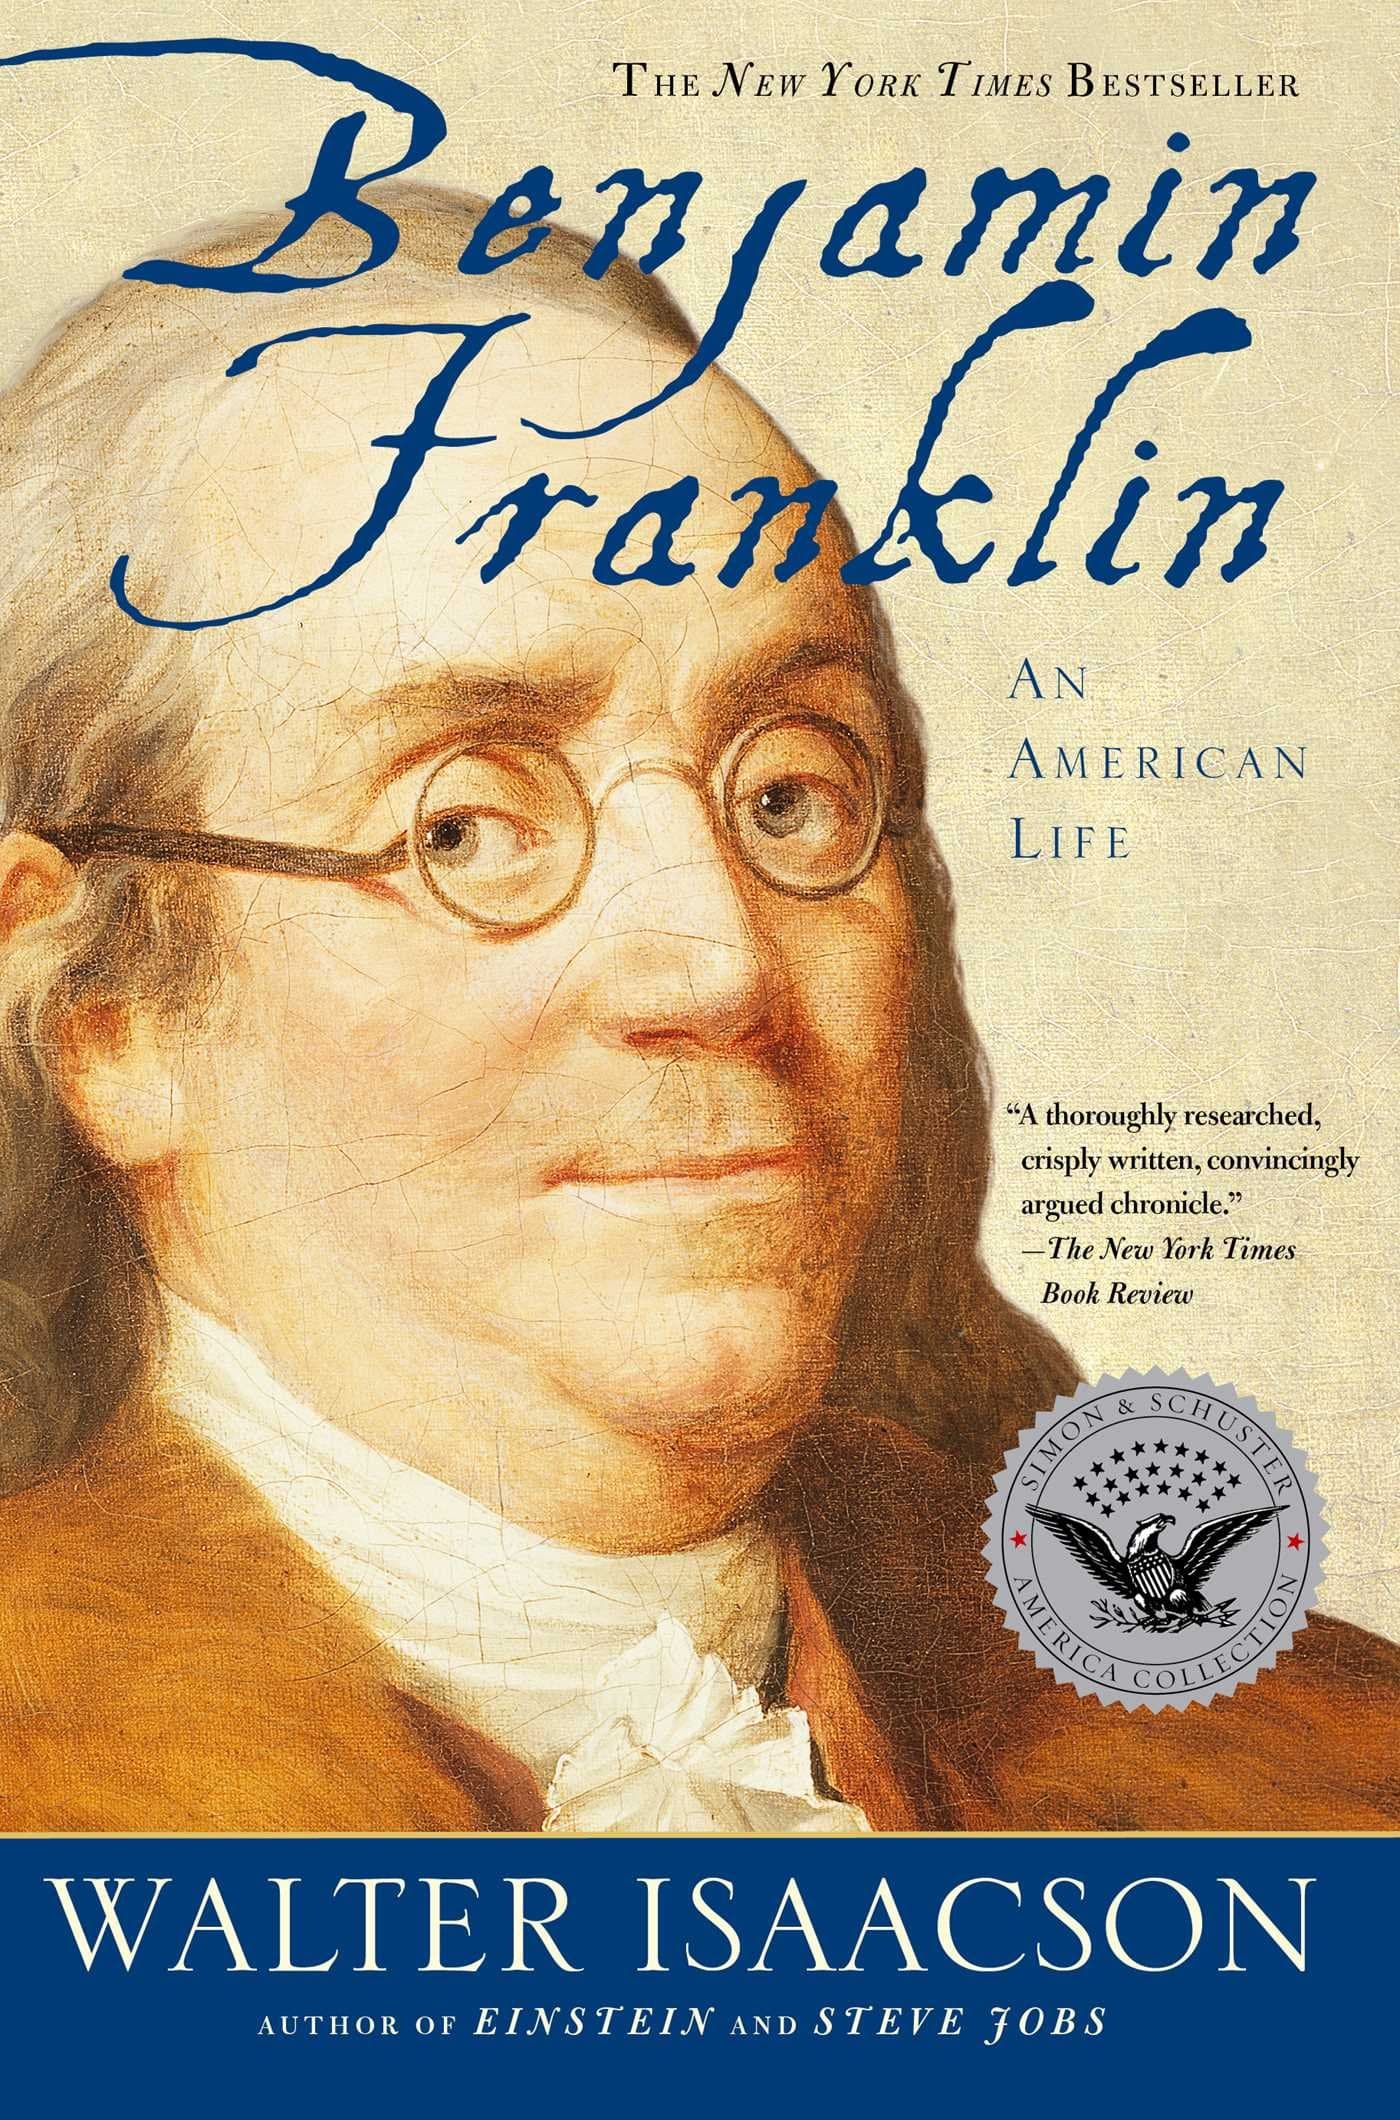 The cover of Benjamin Franklin